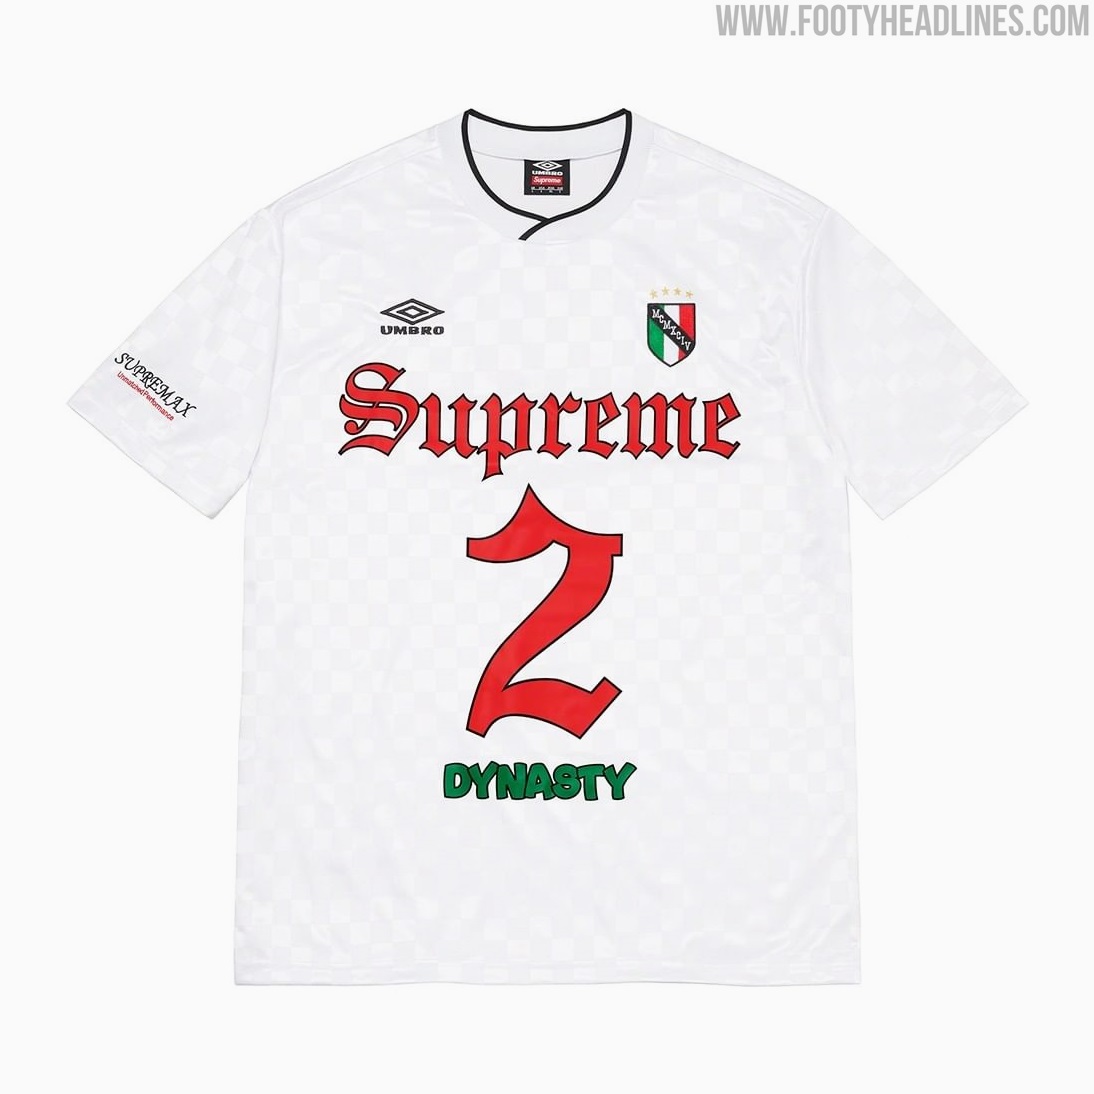 Umbro x Supreme 2022 Football Kit Released - Footy Headlines